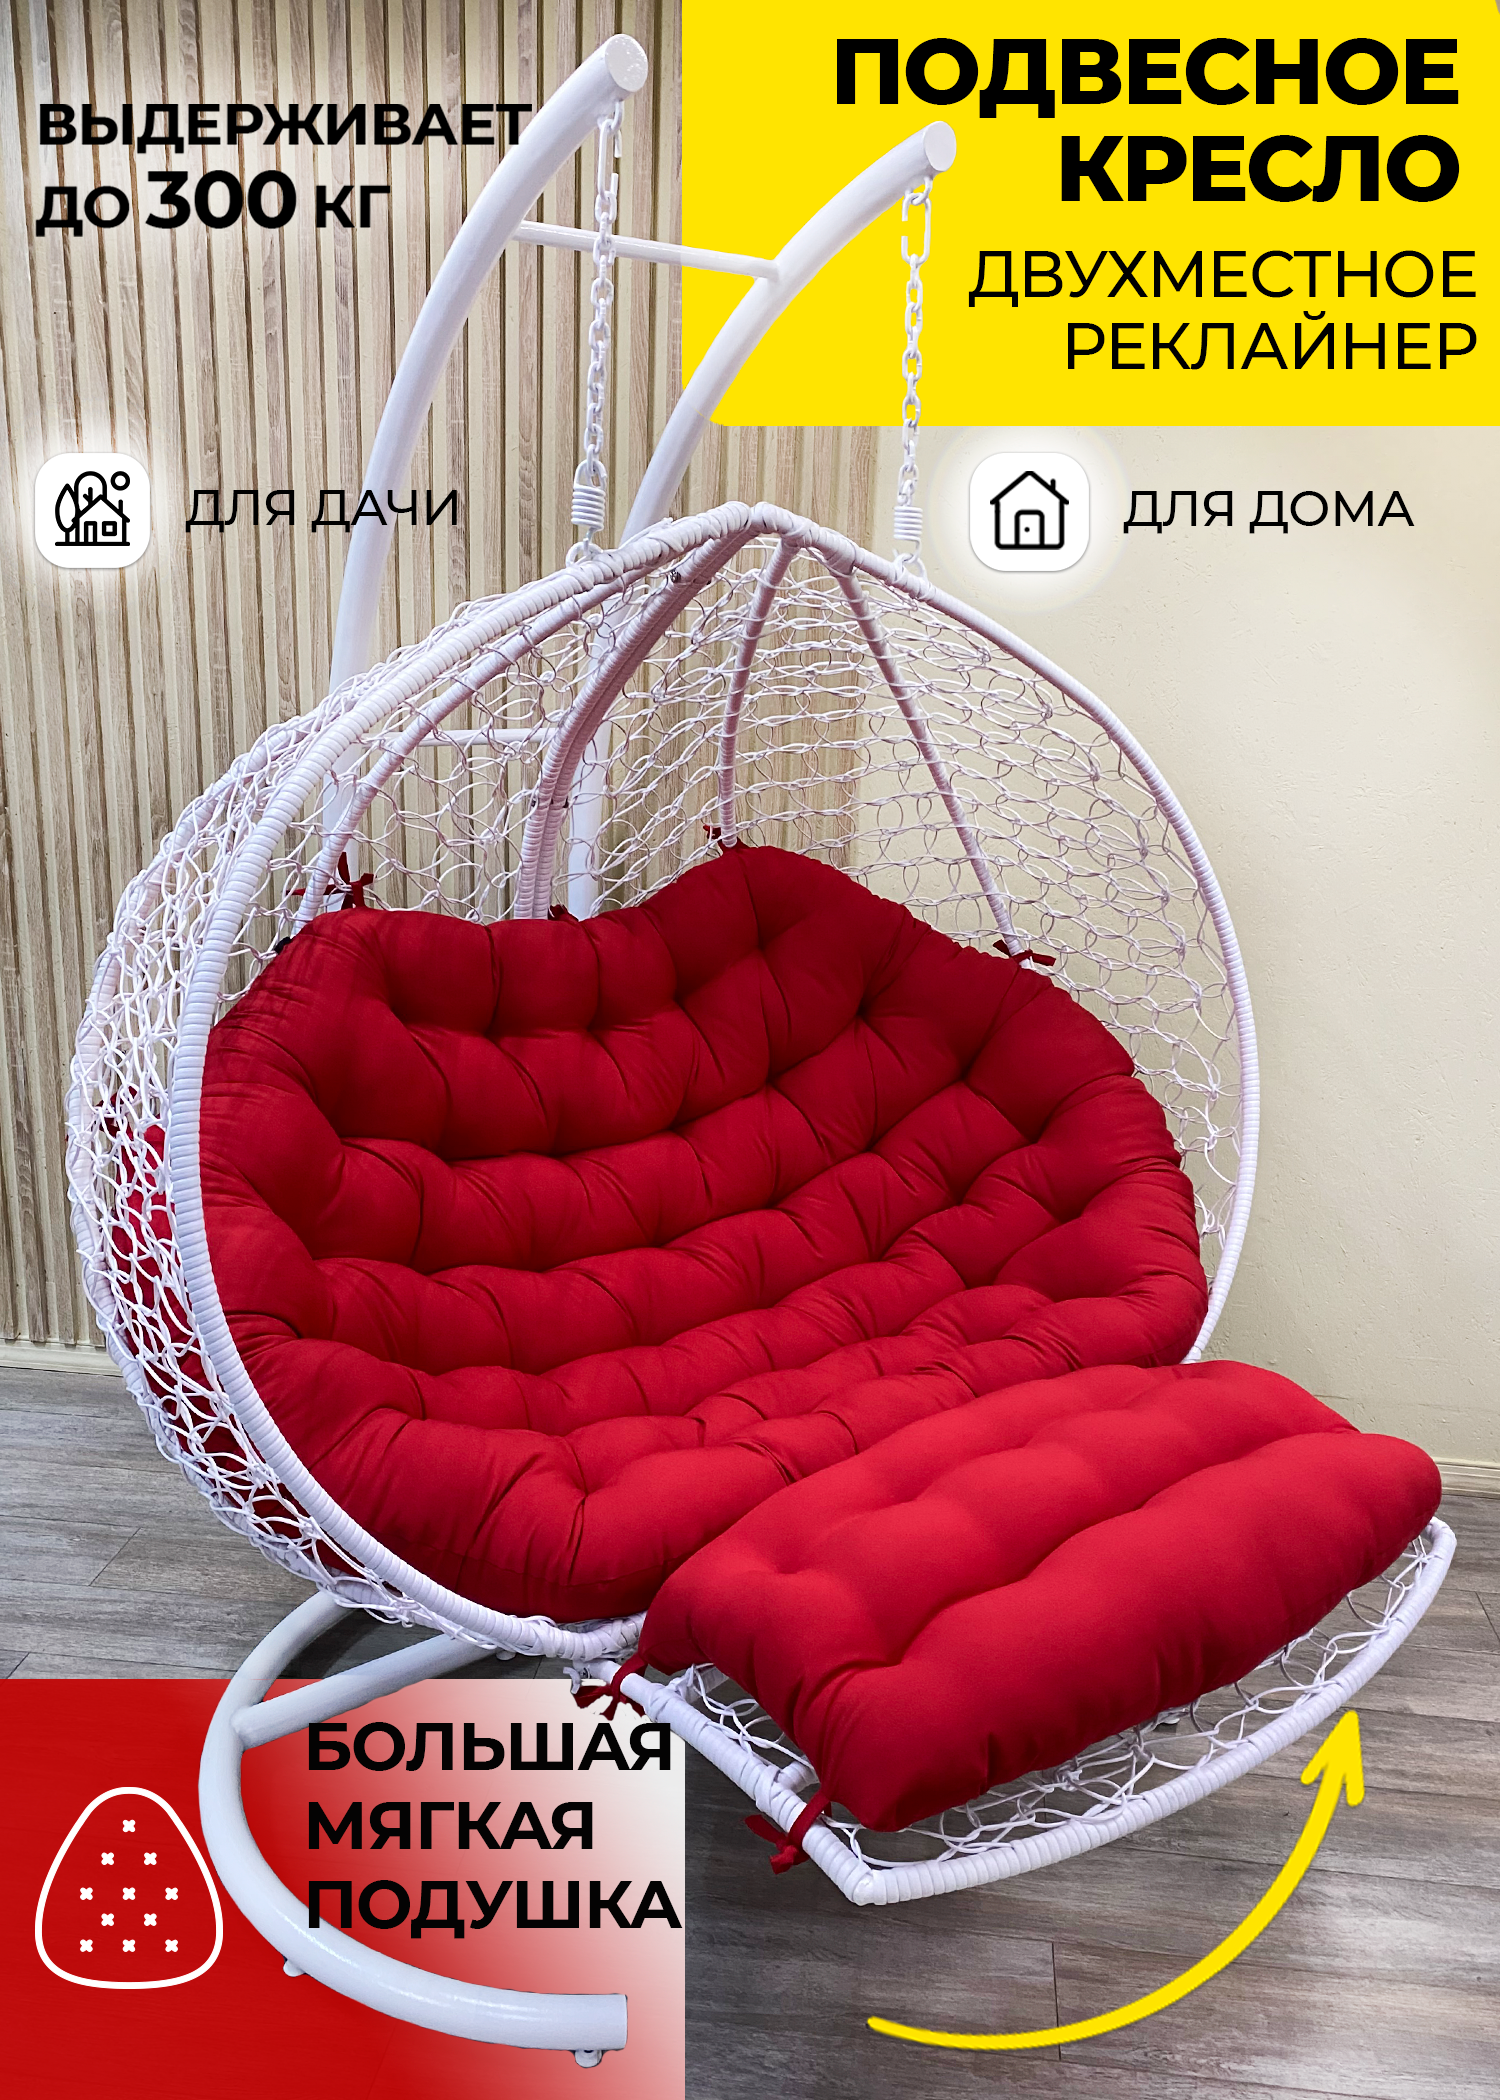 Подвесное кресло Pletenev Двухместное Реклайнер - фотография № 1